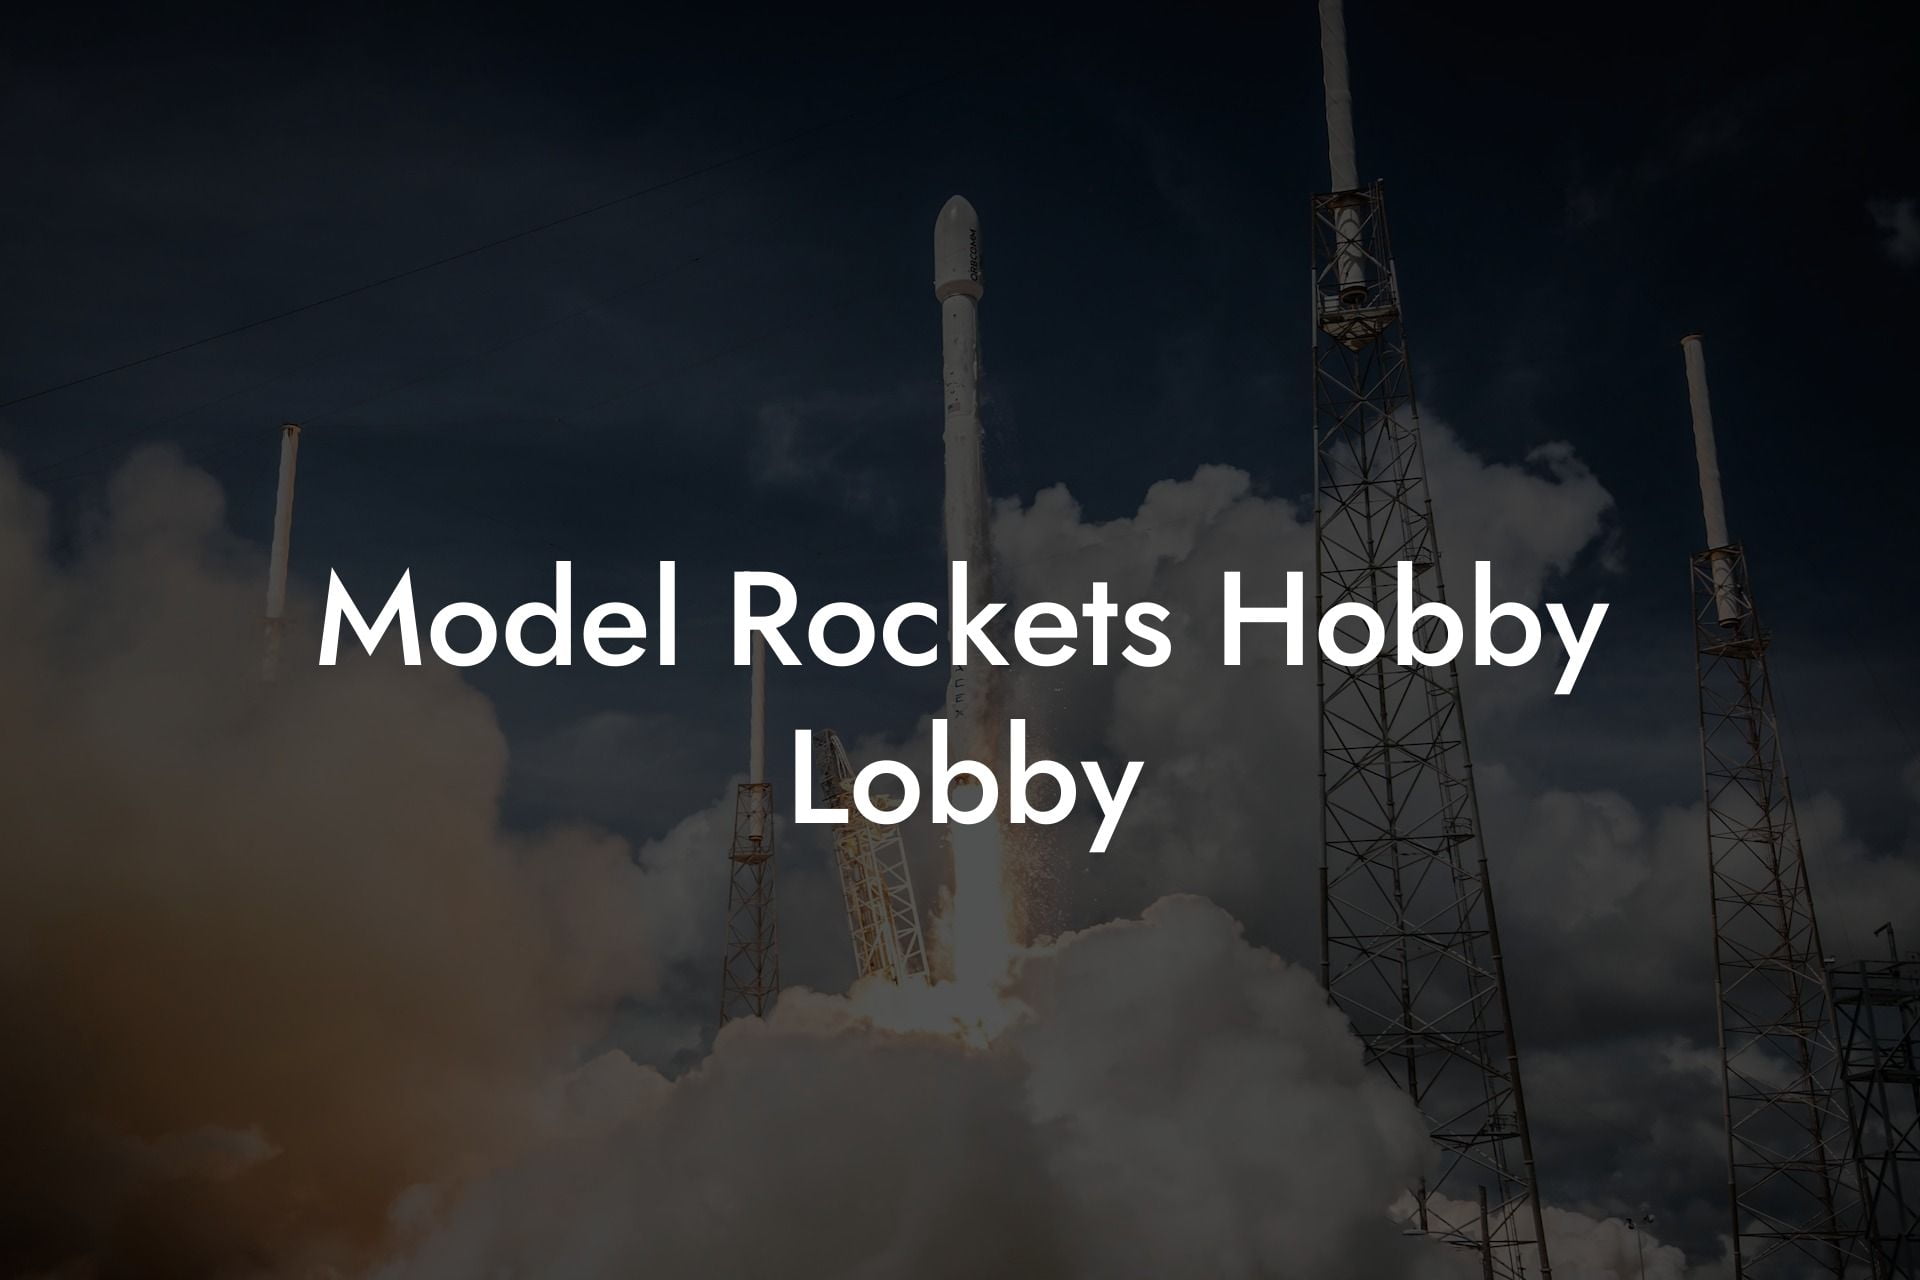 Model Rockets Hobby Lobby